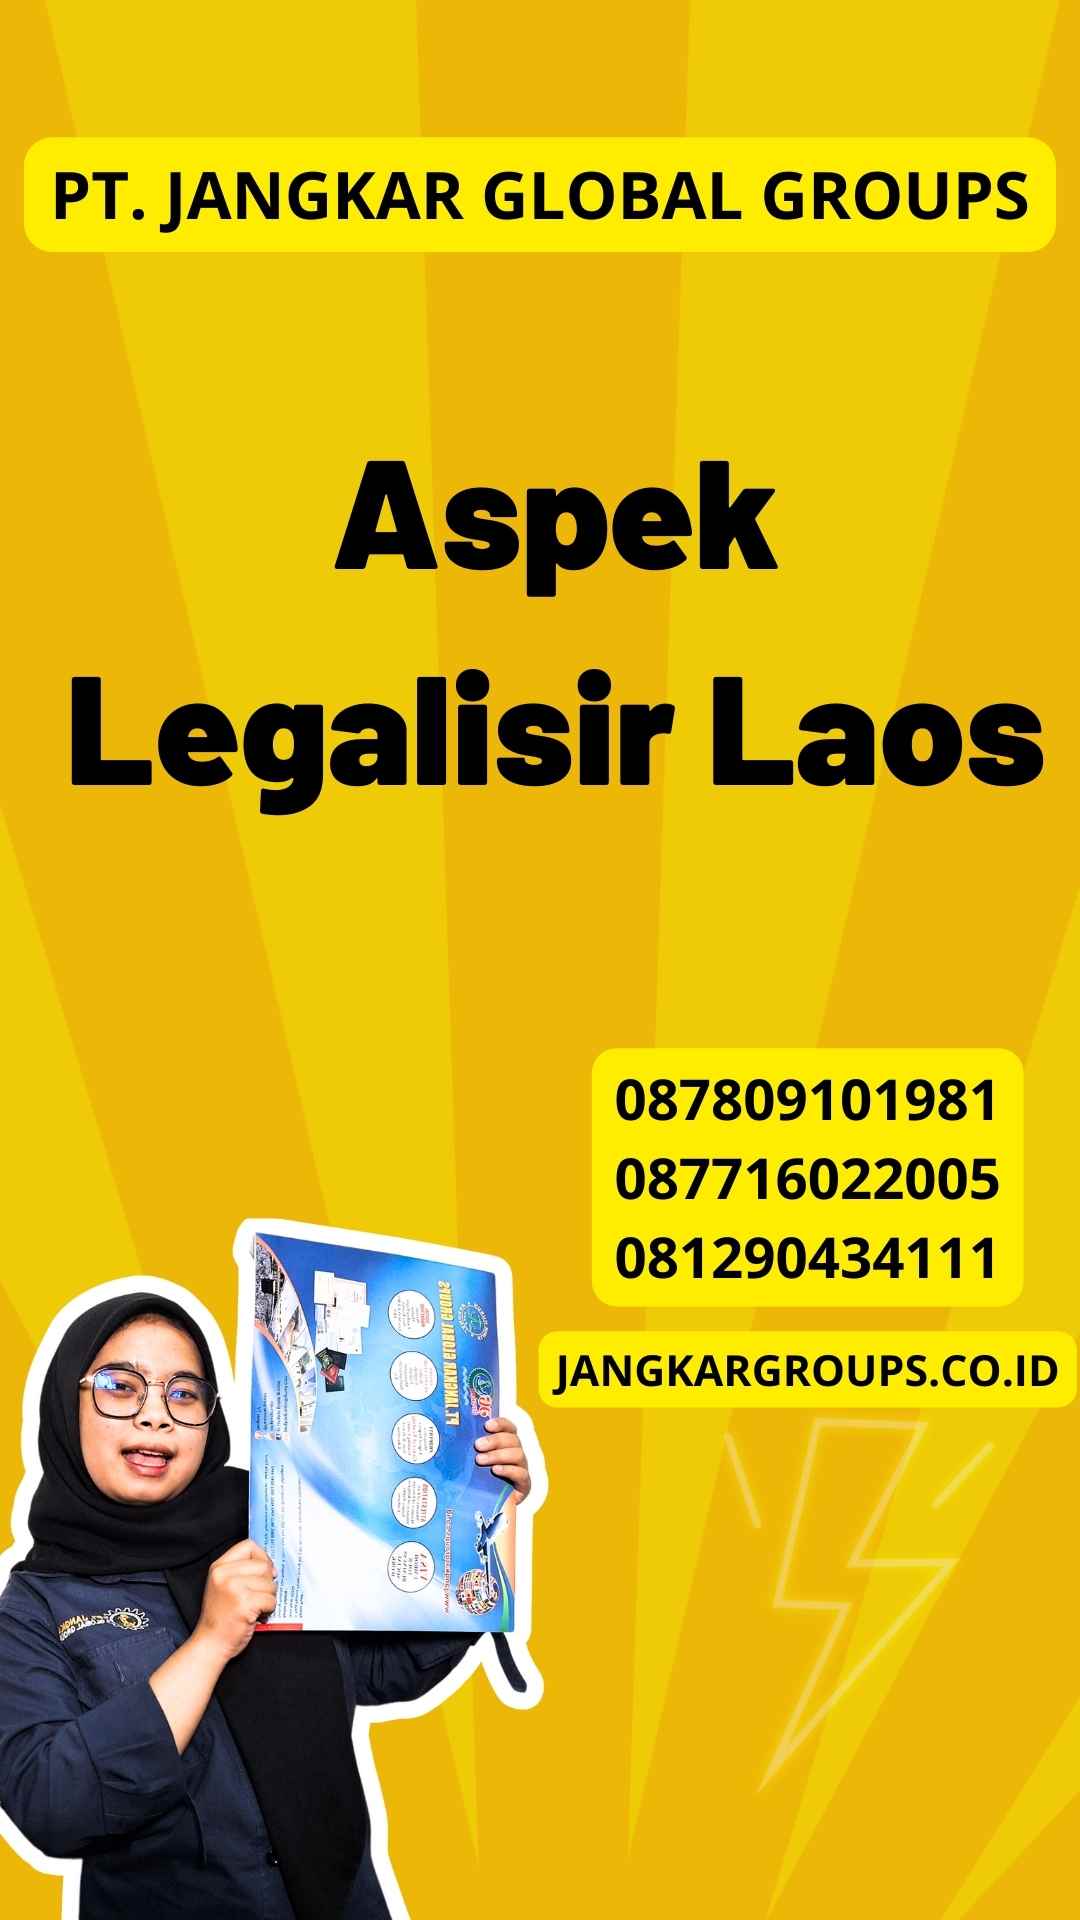 Aspek Legalisir Laos